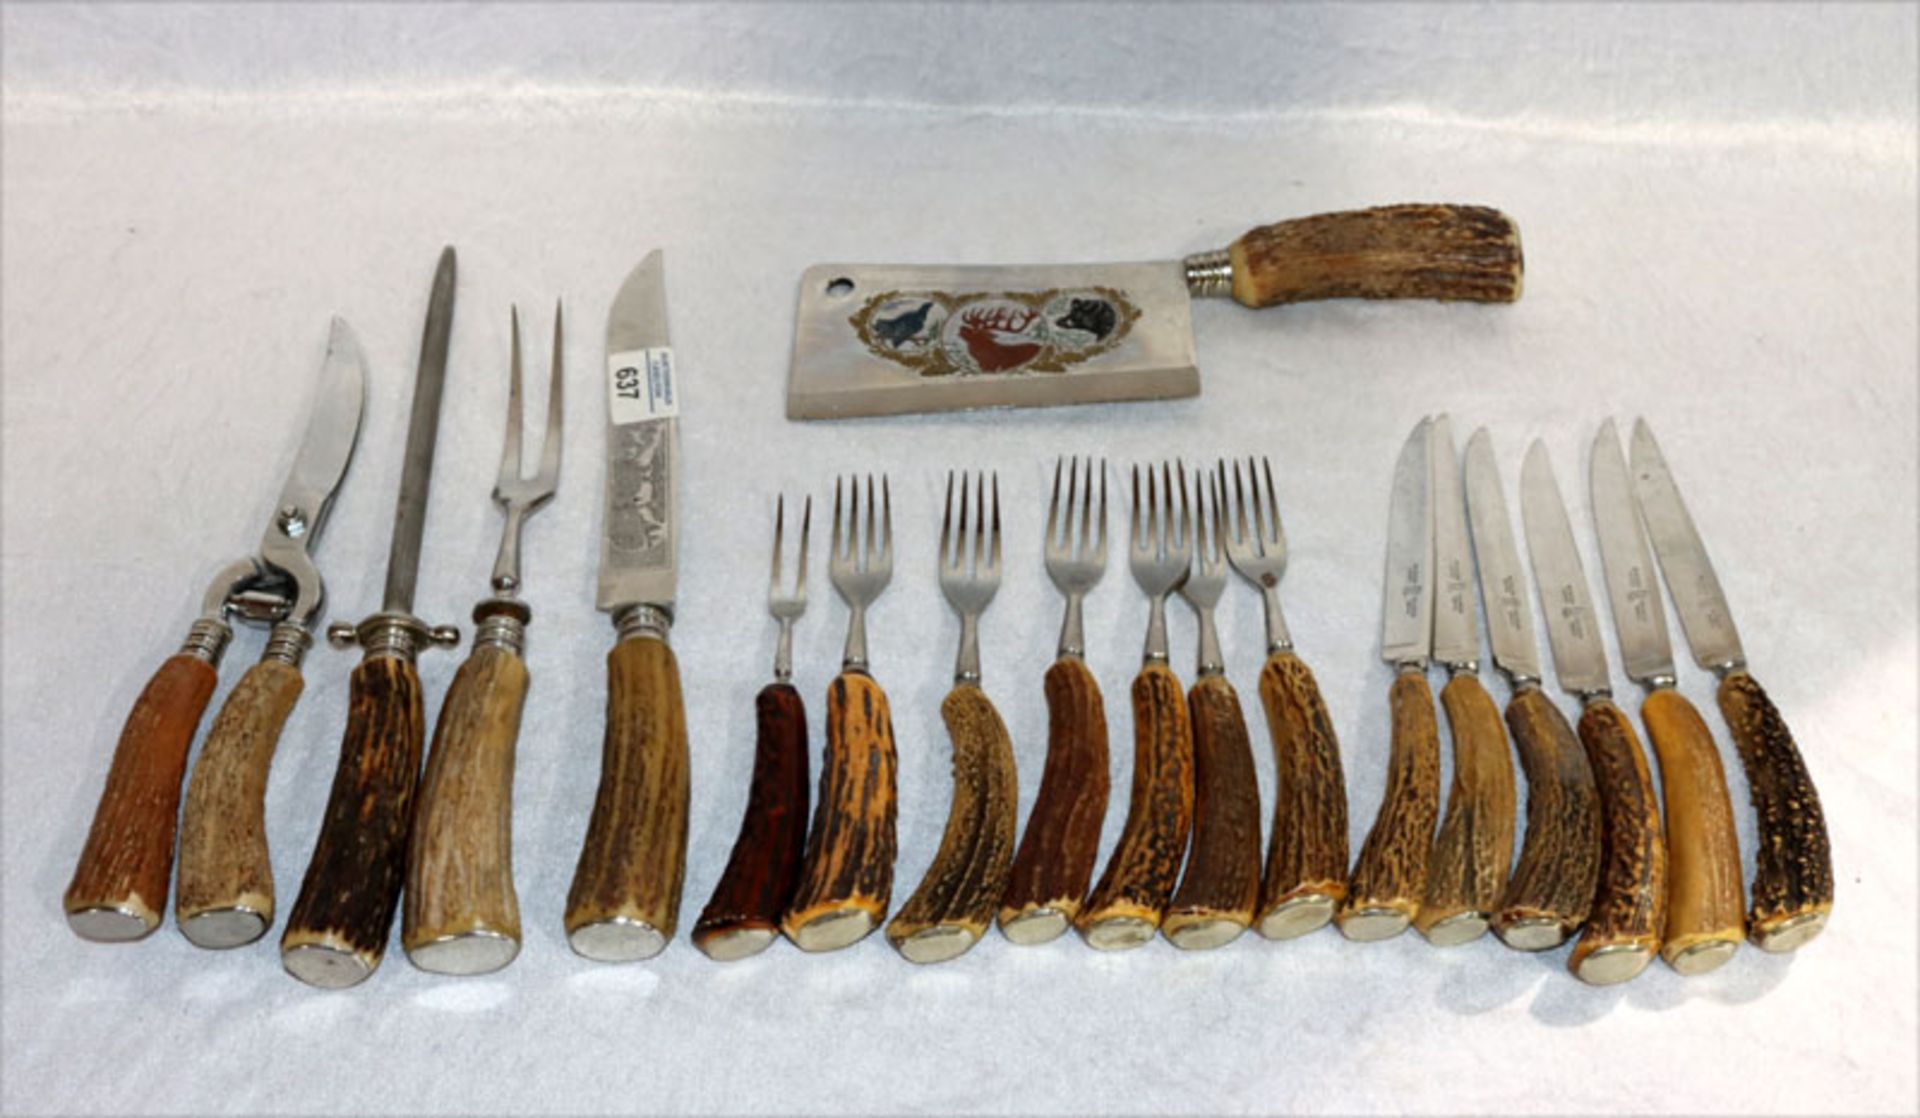 Hirschhorn Besteck: 6 Messer und 6 Gabeln, Tranchierbesteck, Hackbeil mit verzierter Klinge,